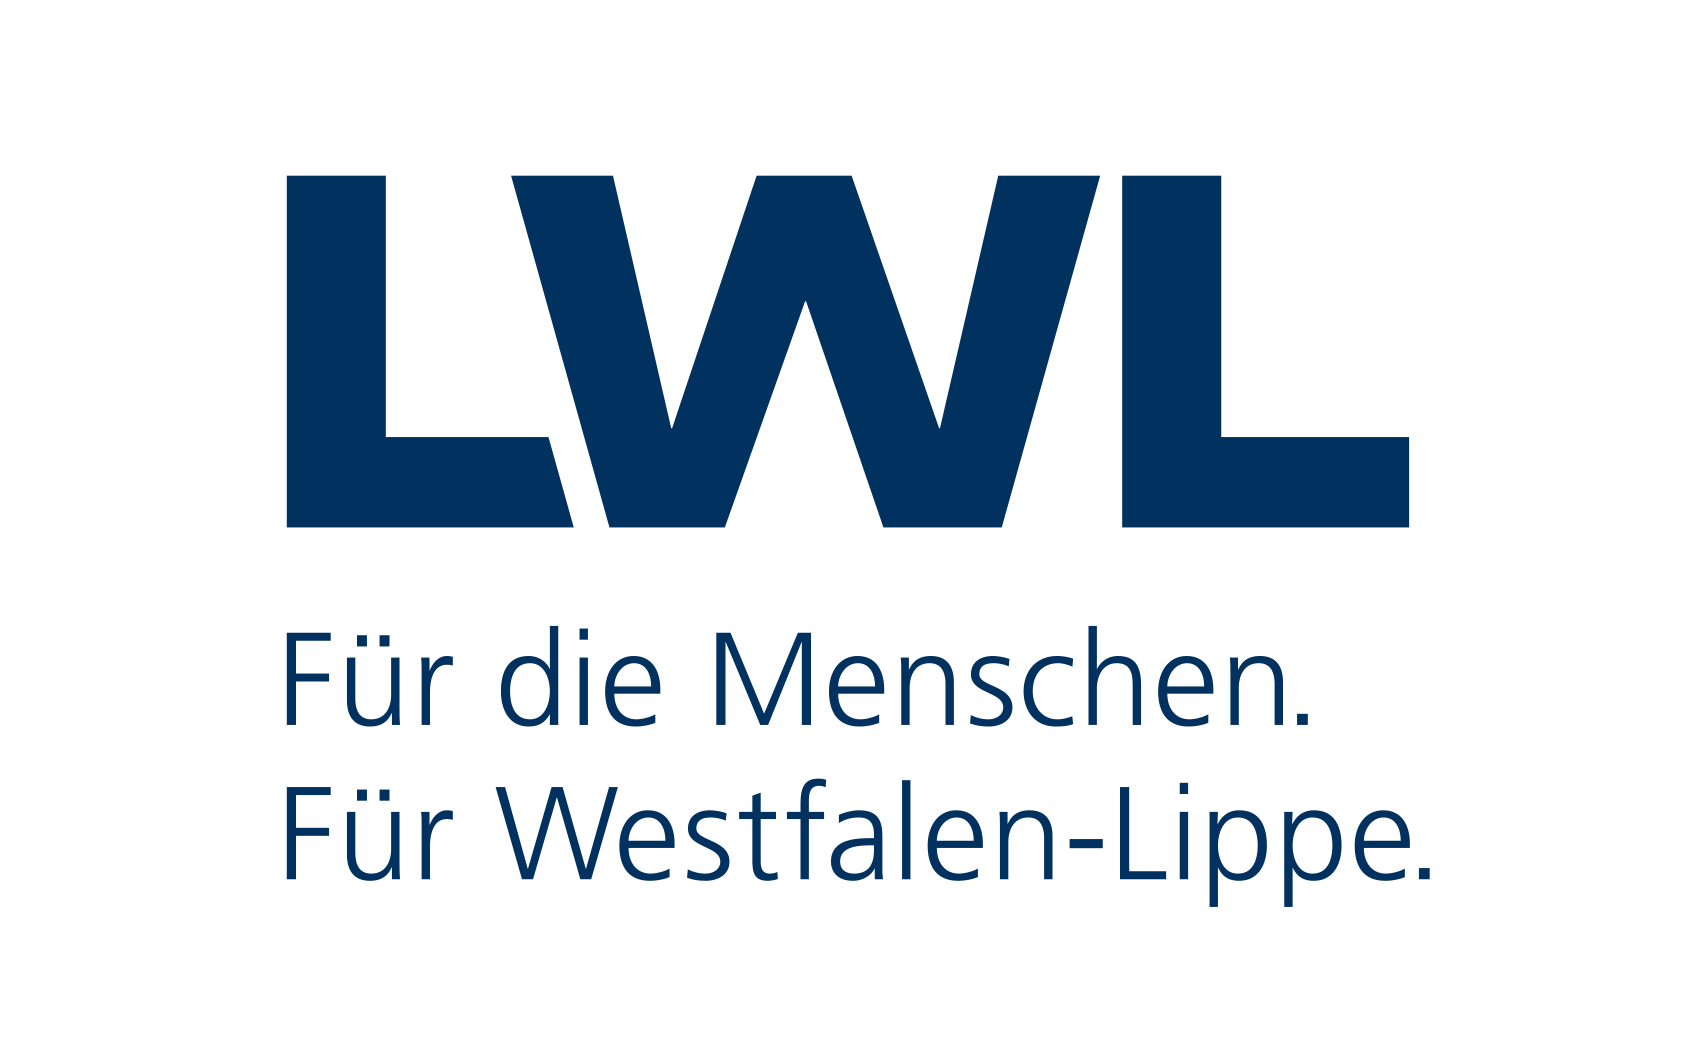 Logo des LWL